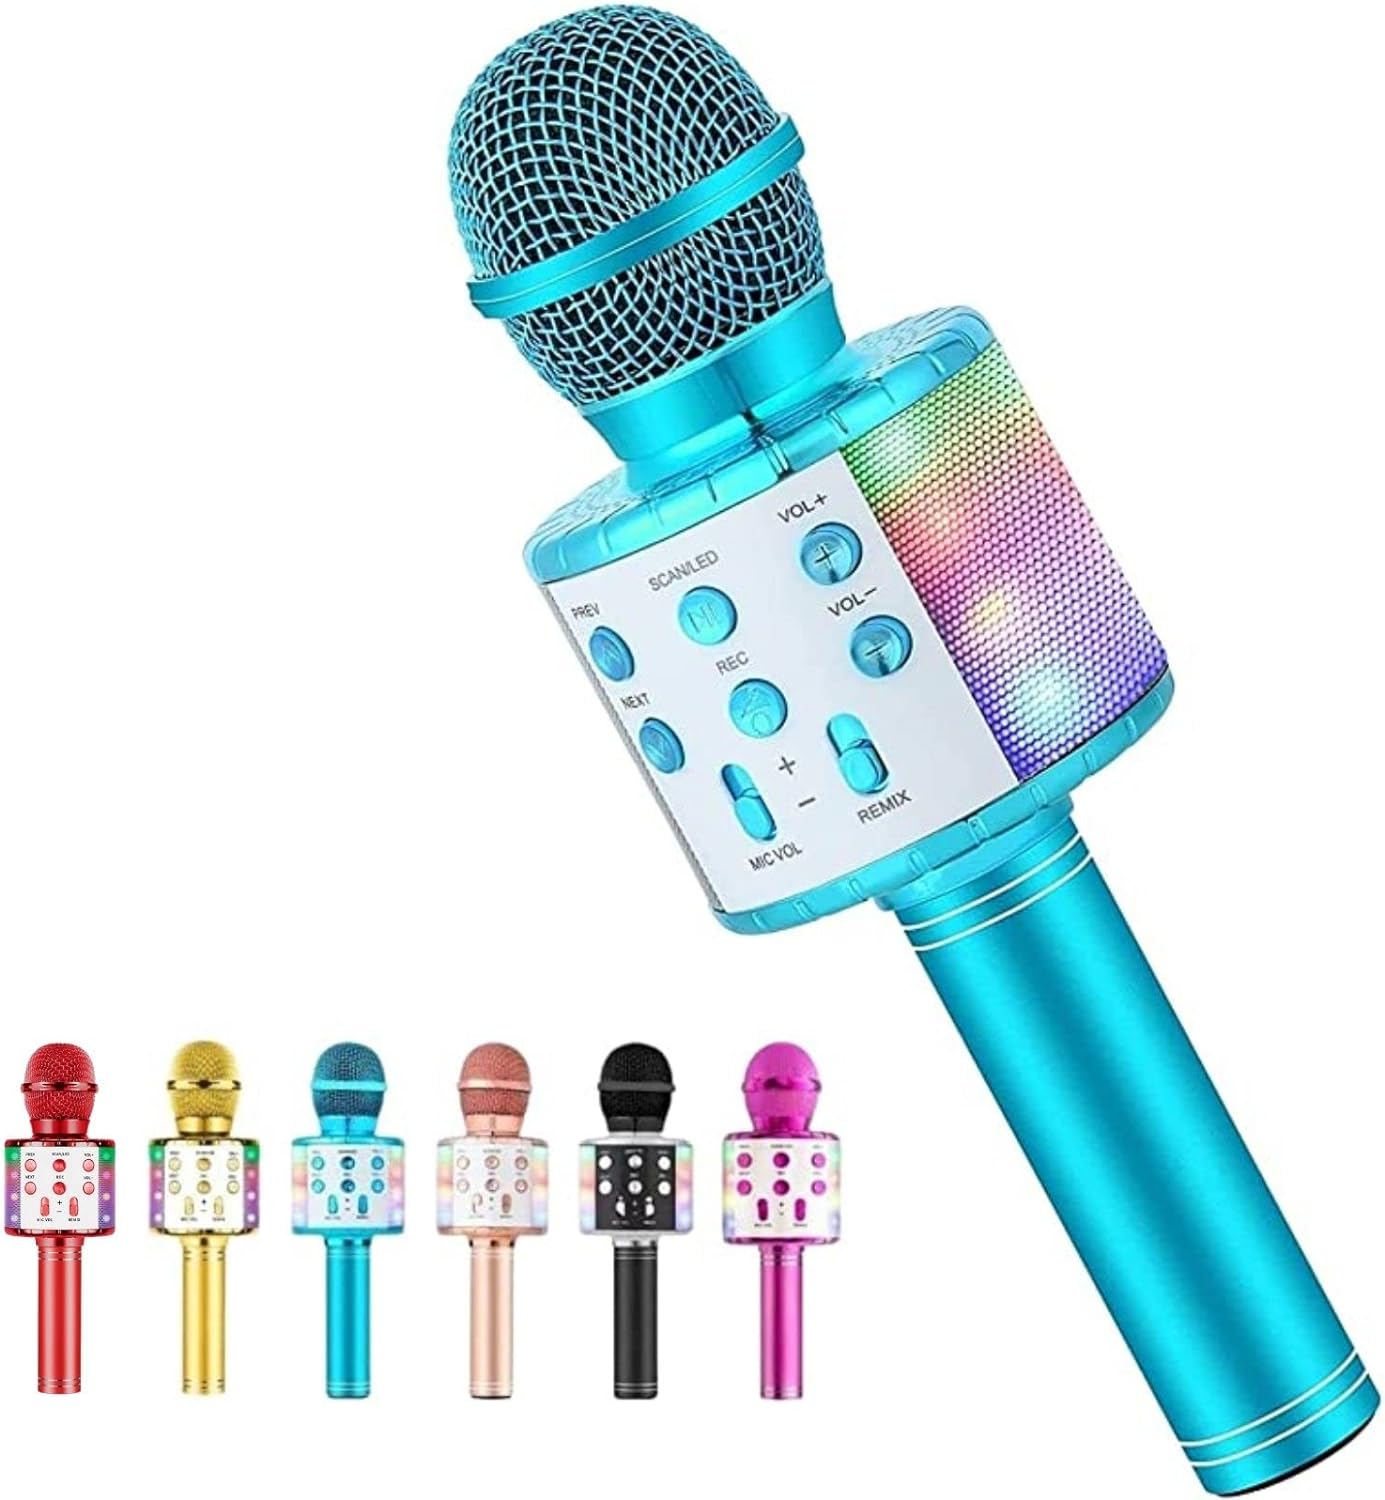 Set karaoké adulte - Sets karaoké - Microphone karaoké - Set